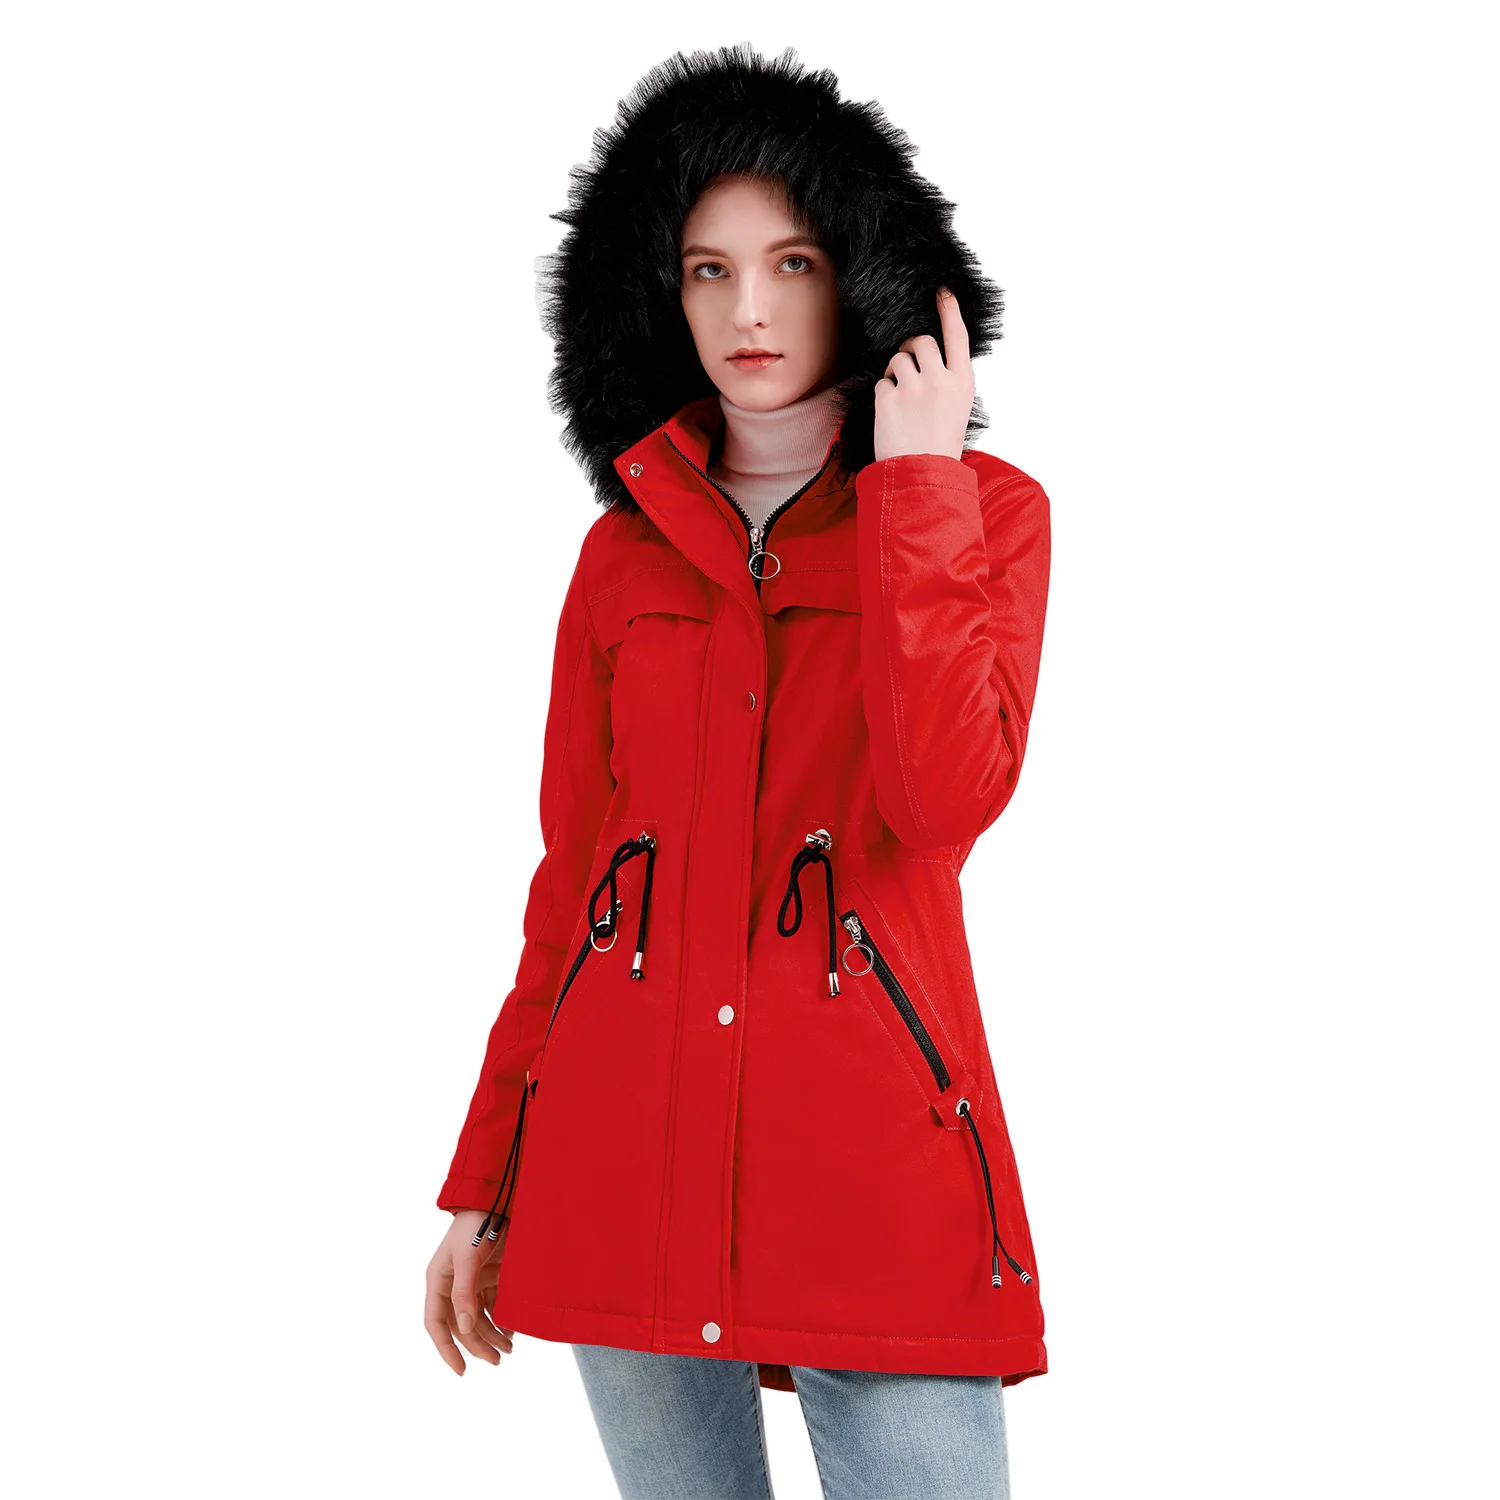 Autumn Winter Jacket Women Clothes Vintage Warm Coat Female Women's Down Cotton Outerwear Warm Thick Long Parkas Oversized